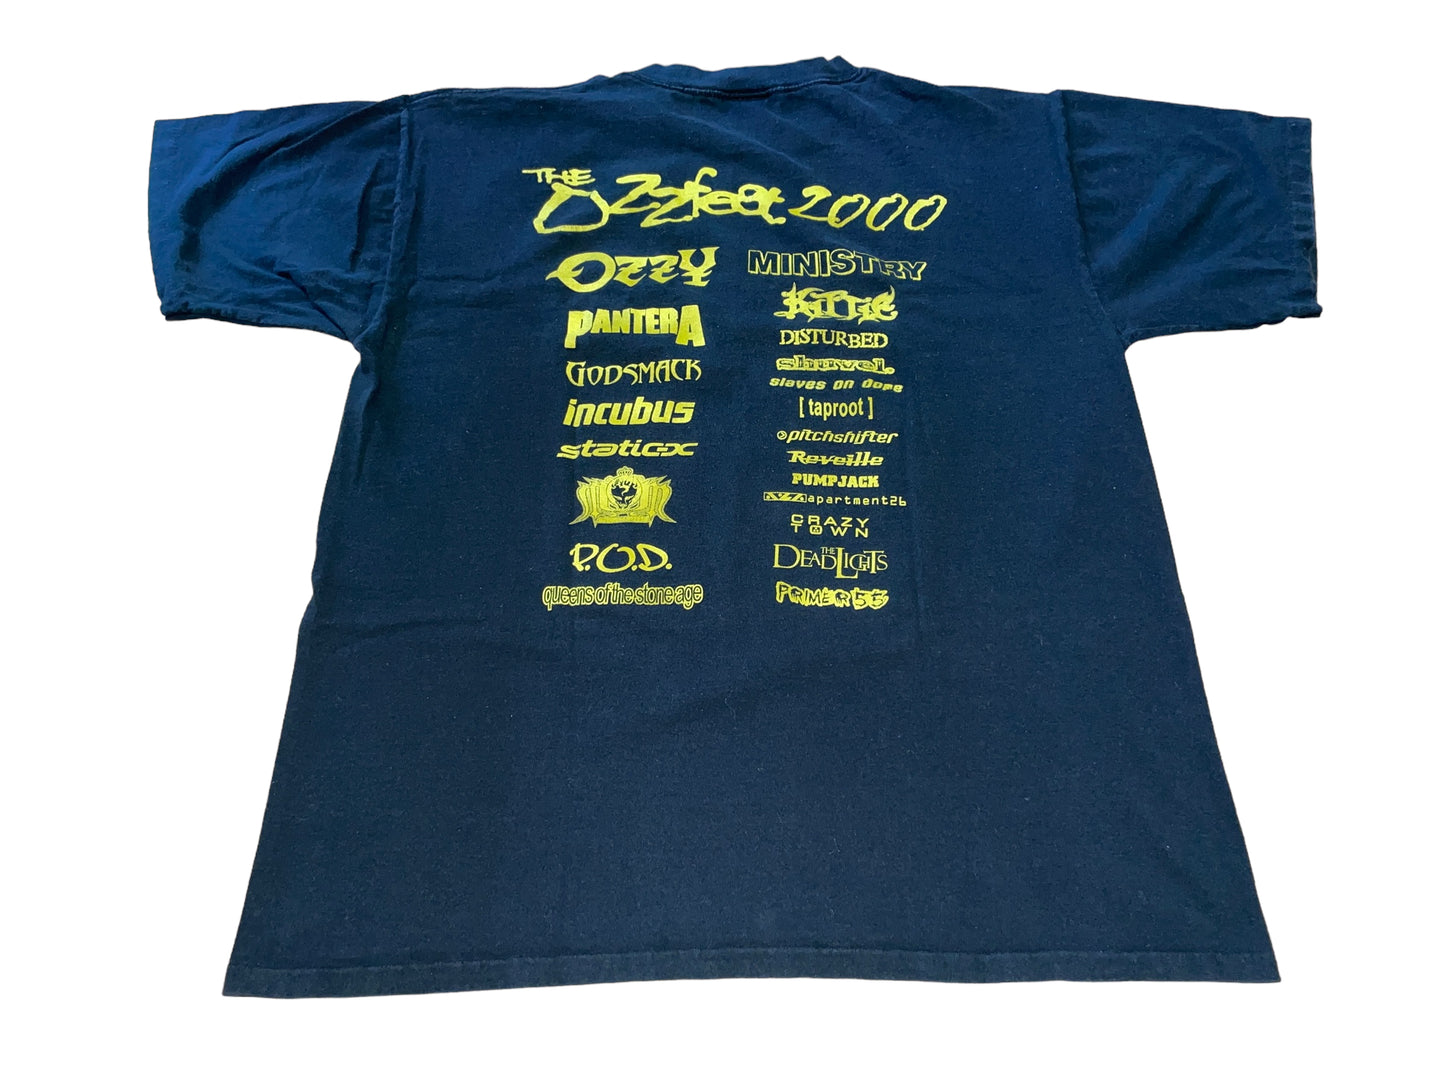 Vintage 2000 Ozzfest T-Shirt